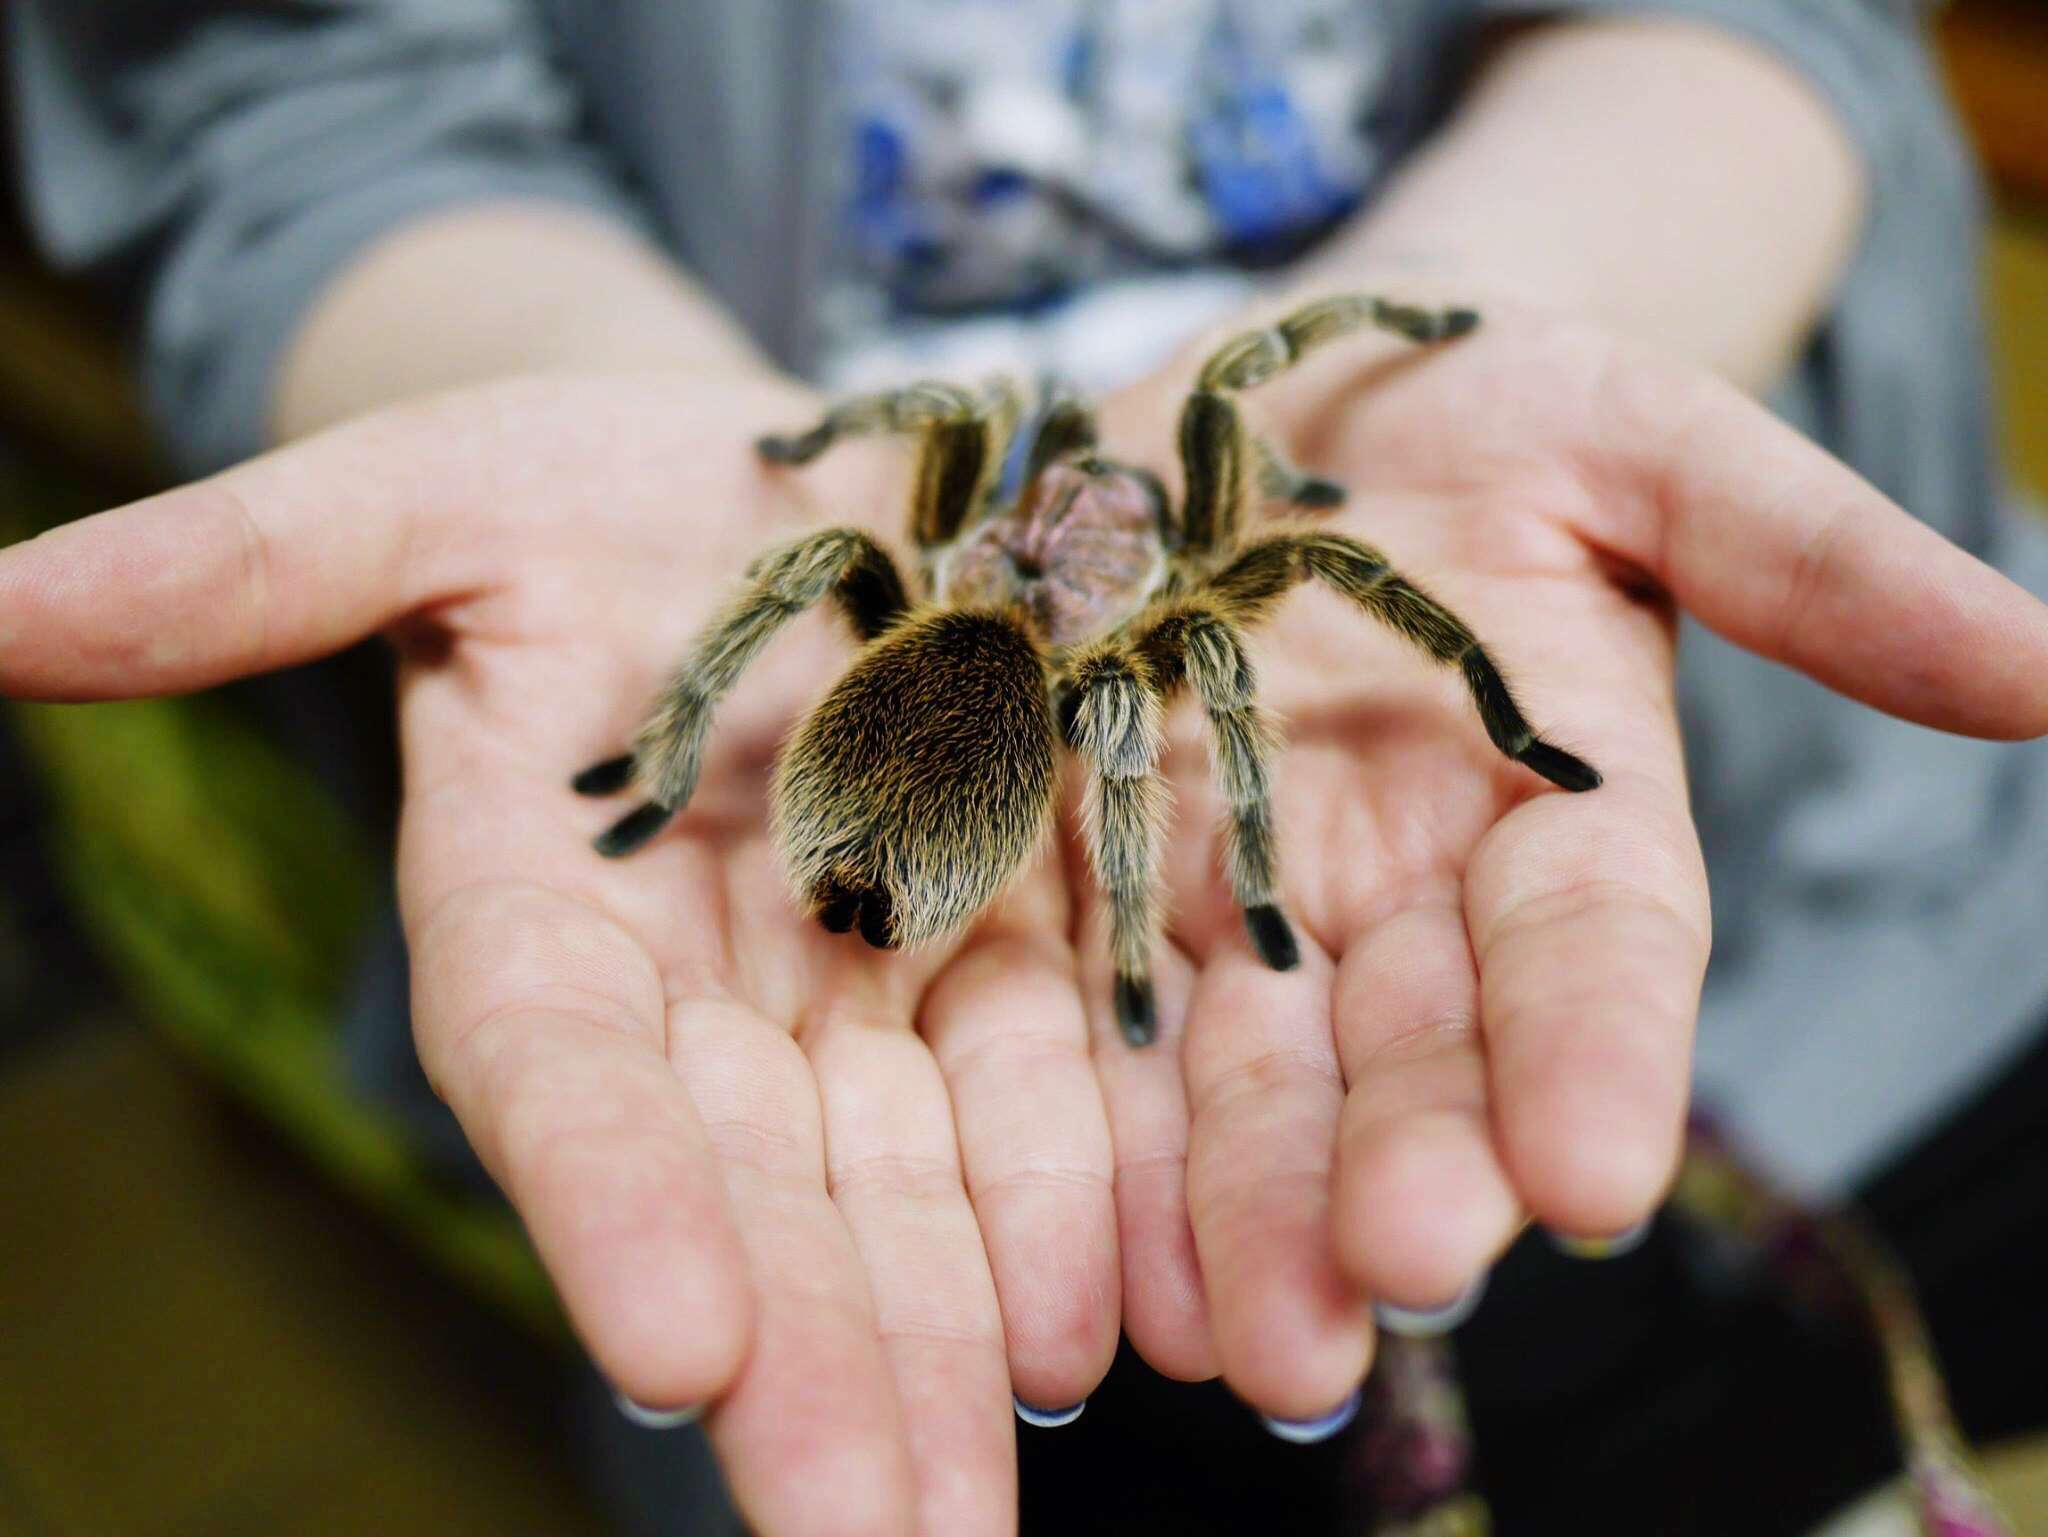 a tarantula in a person's palms